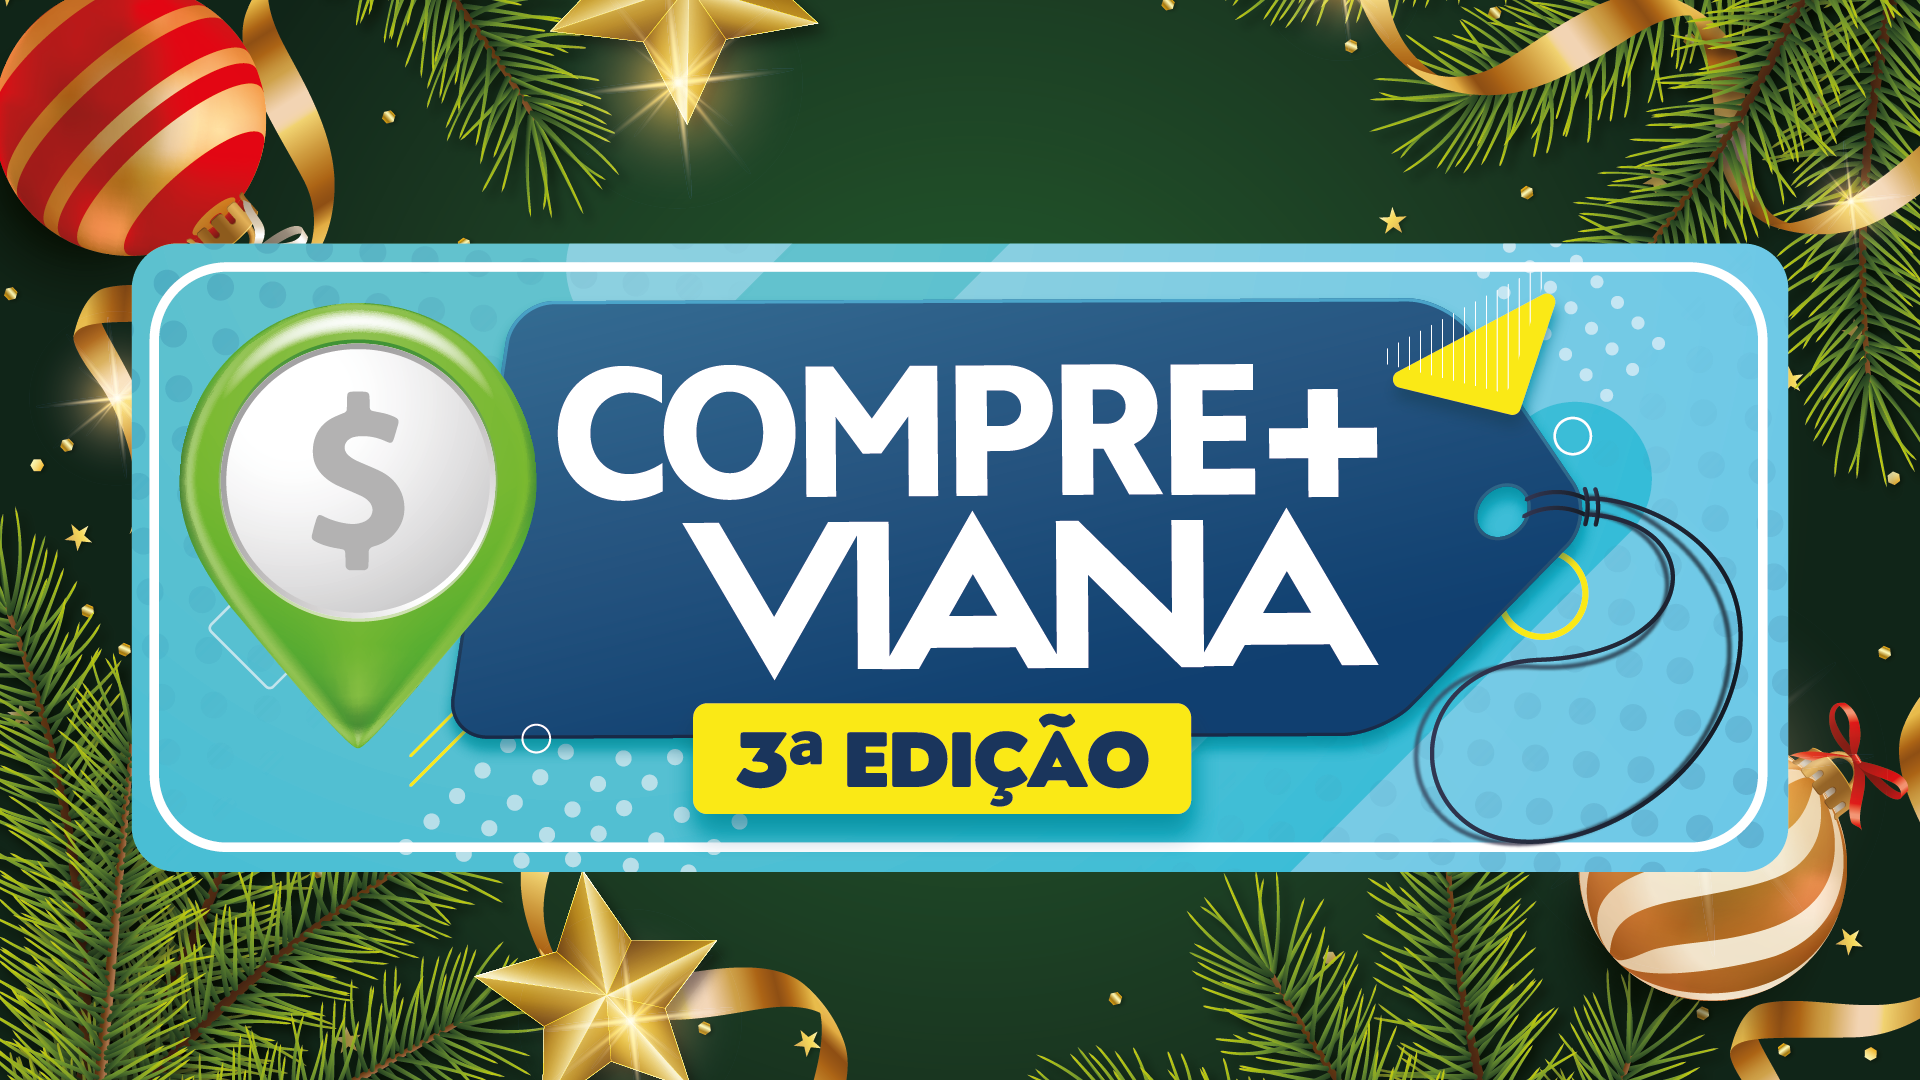 Compre+Viana retorna para a 3ª edição e promete movimentar o comércio de Viana neste fim de ano